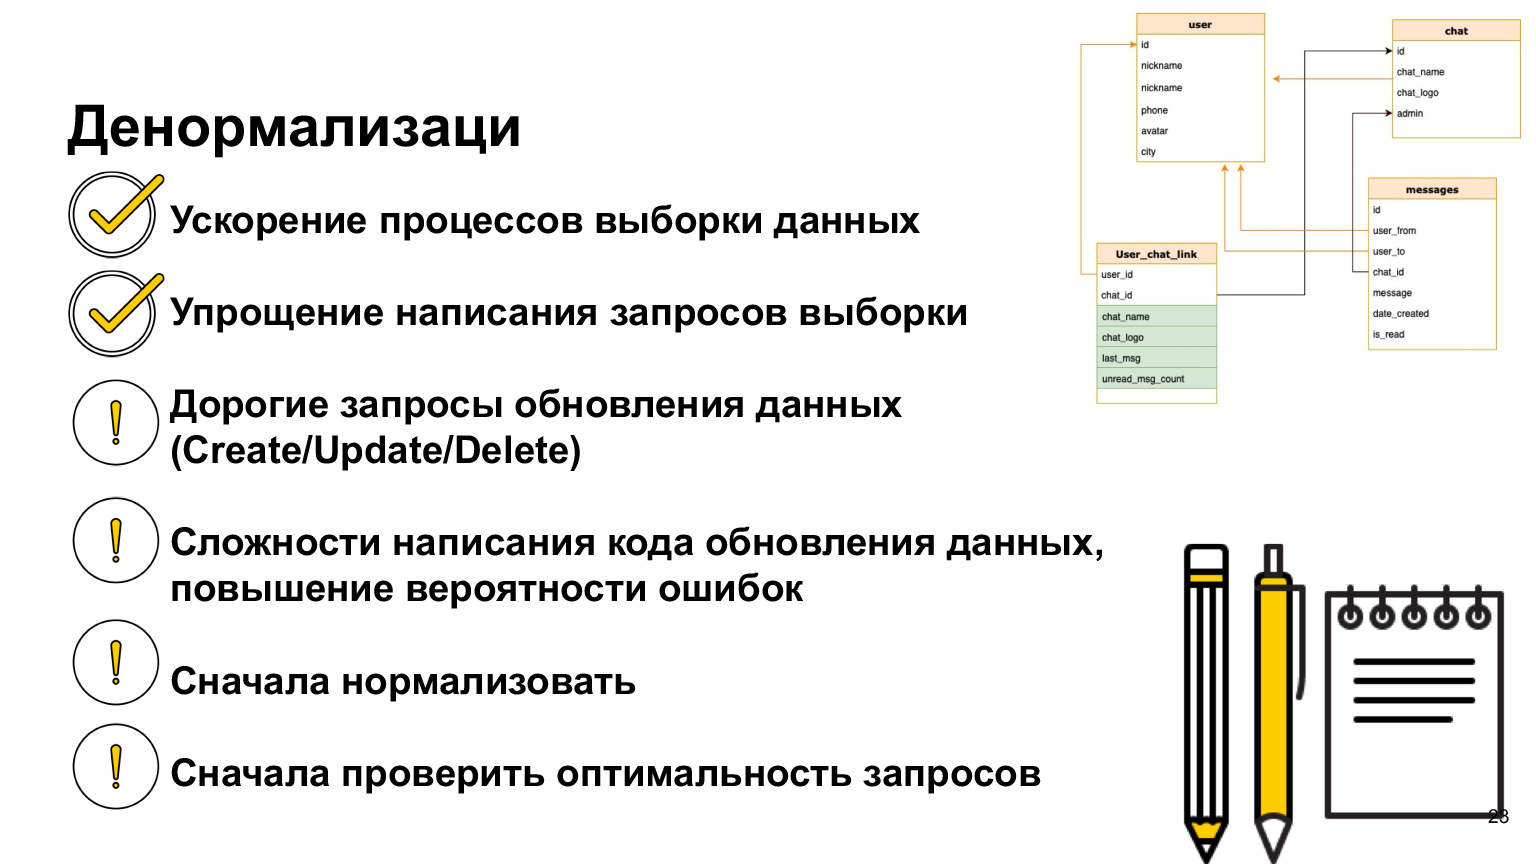 Базы данных: большой обзор типов и подходов. Доклад Яндекса - 17